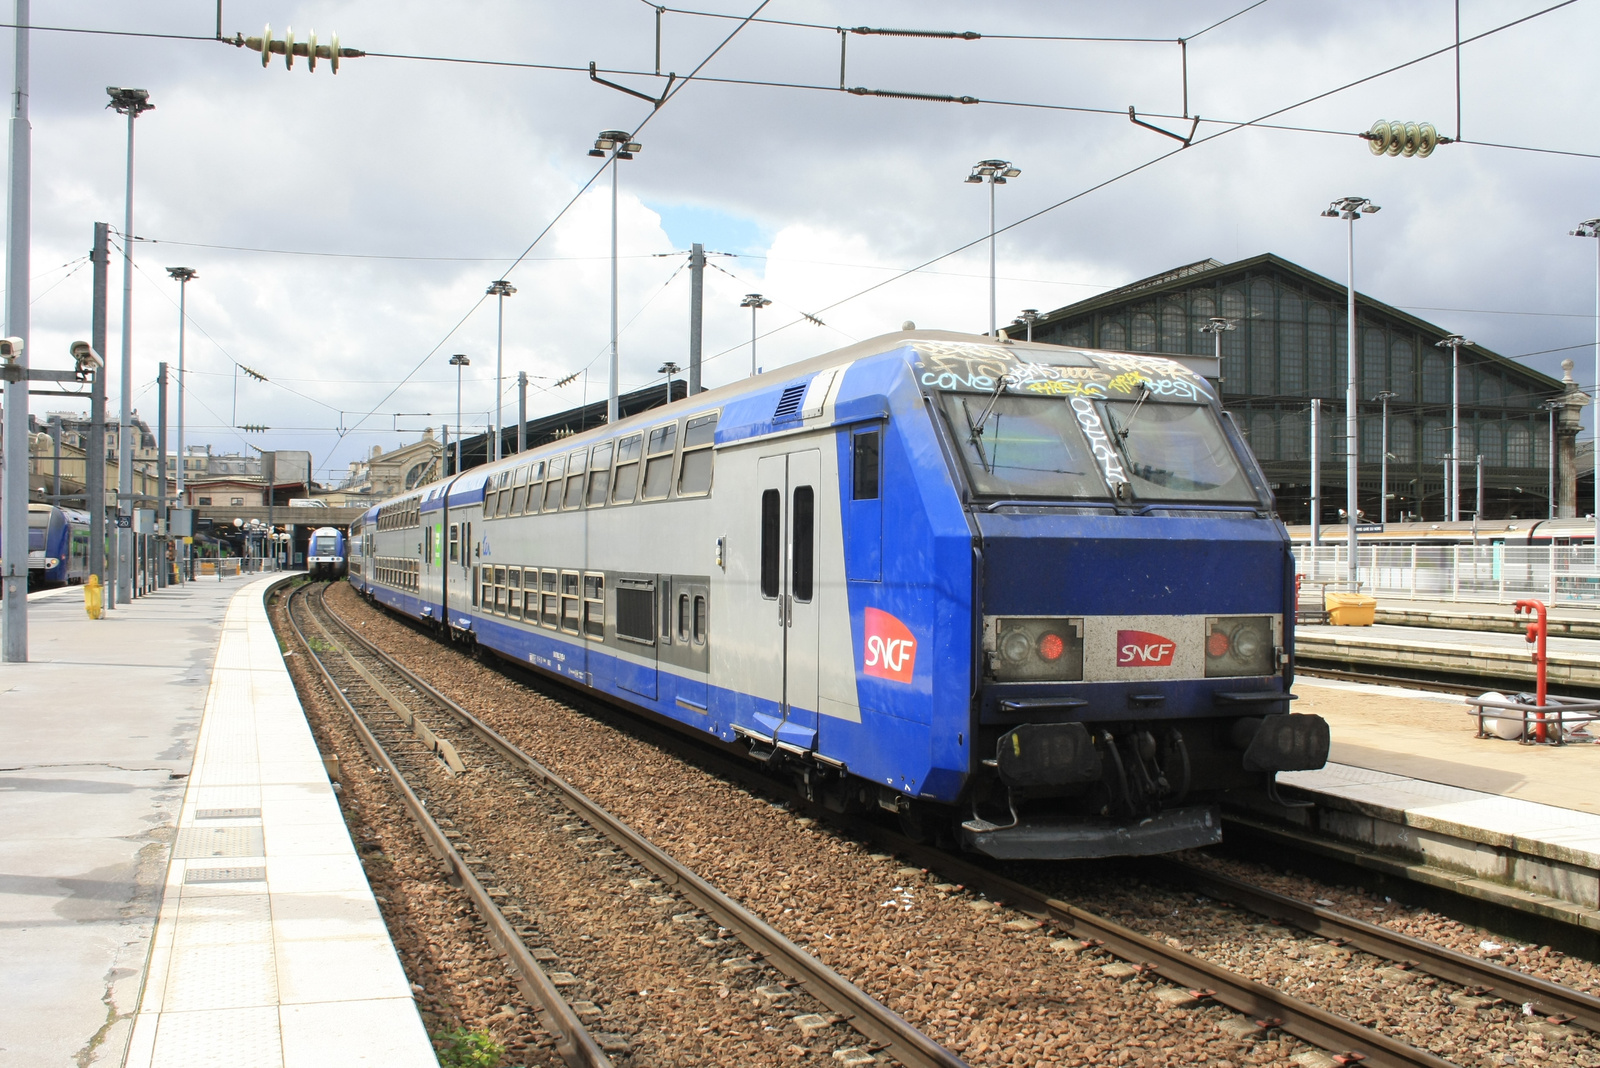 SNCF TER Vezérlőkocsi Paris Nord-Chantilly-St Just